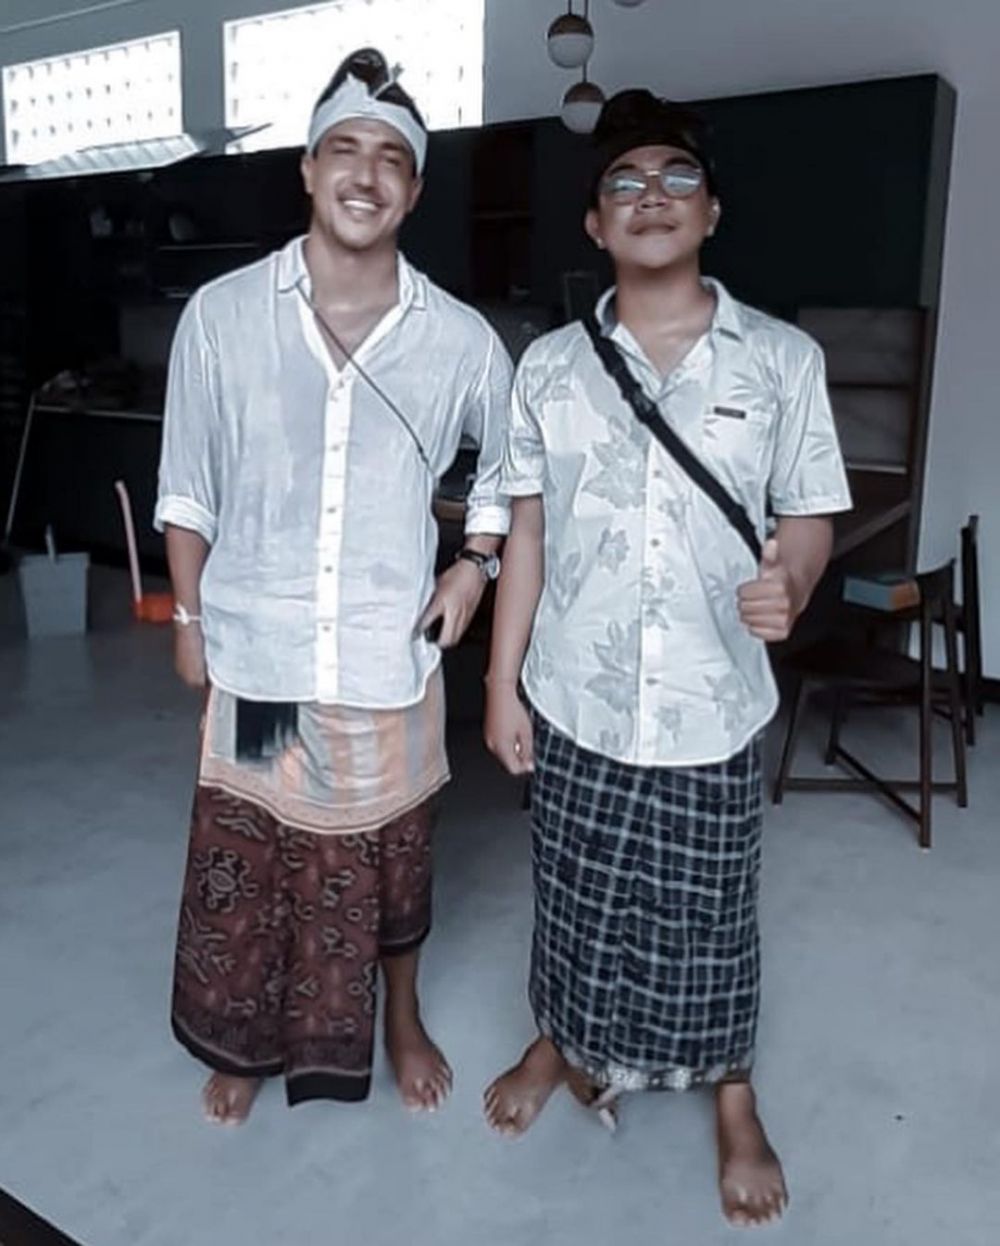 Pindah ke rumah baru, 10 momen Raisa gelar upacara melaspas adat Bali